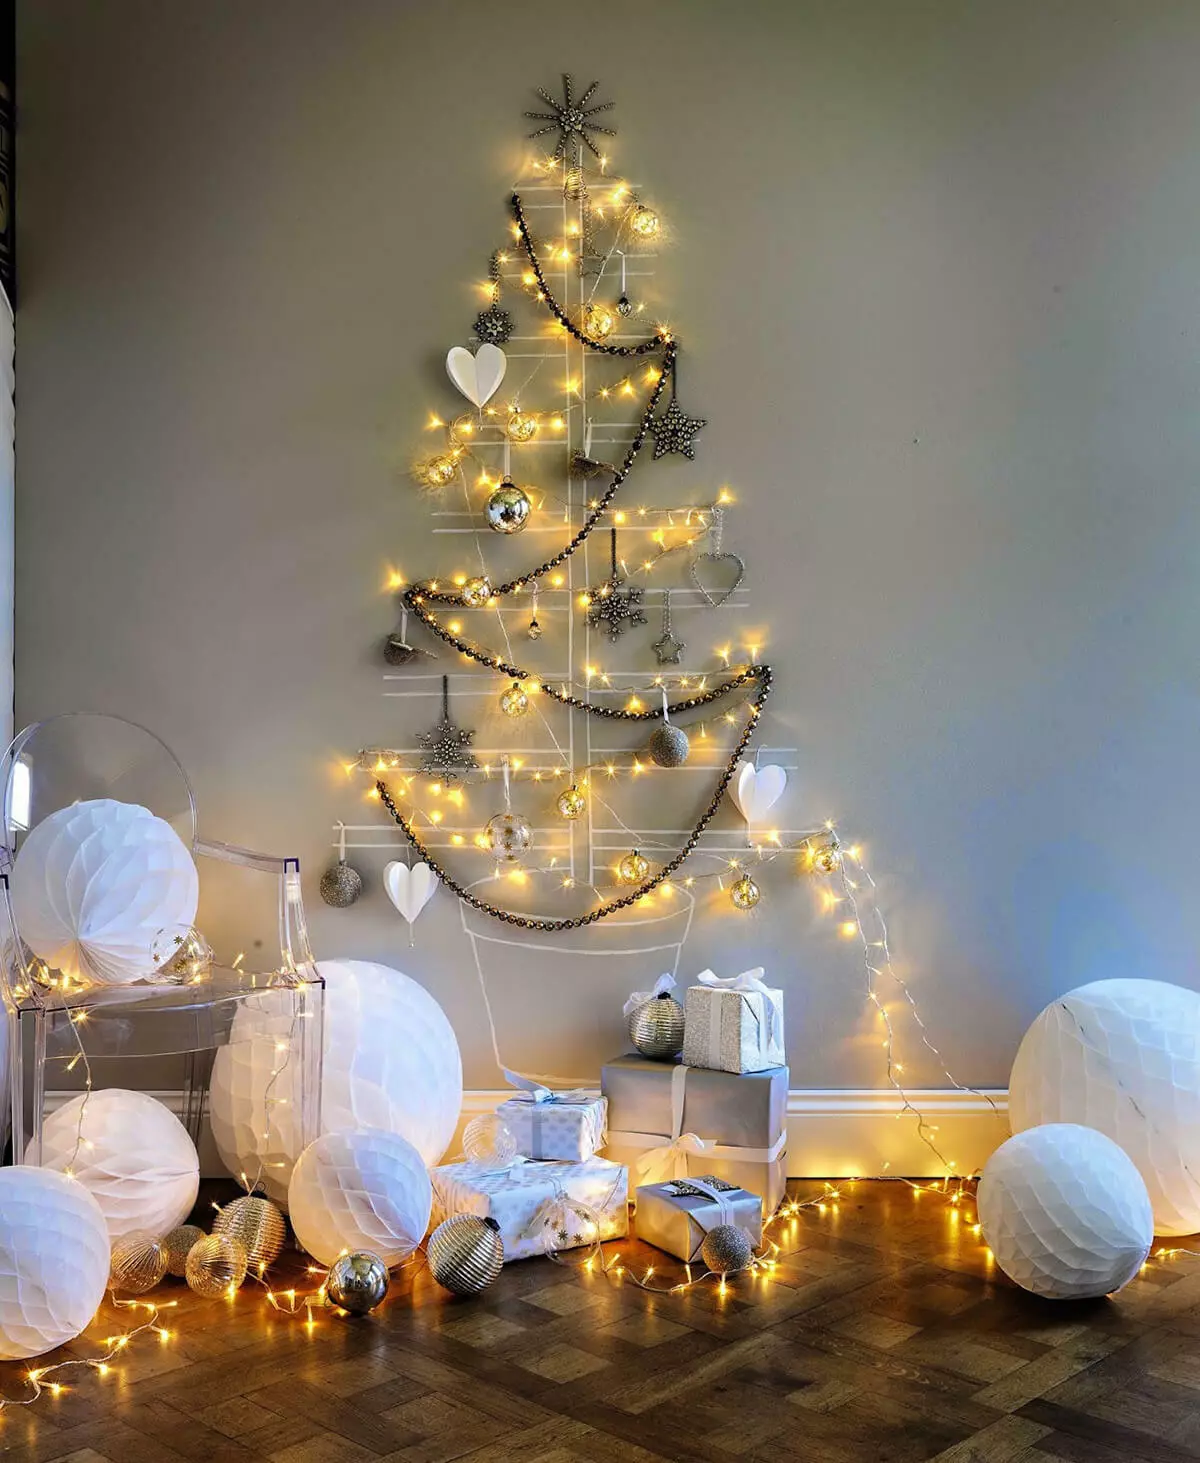 Ako zdobí vianočný strom s vencom? Ako správne a krásne obliekať to podľa schémy s žiariace elektrickej girlandami a ďalšie veniec? 7630_44